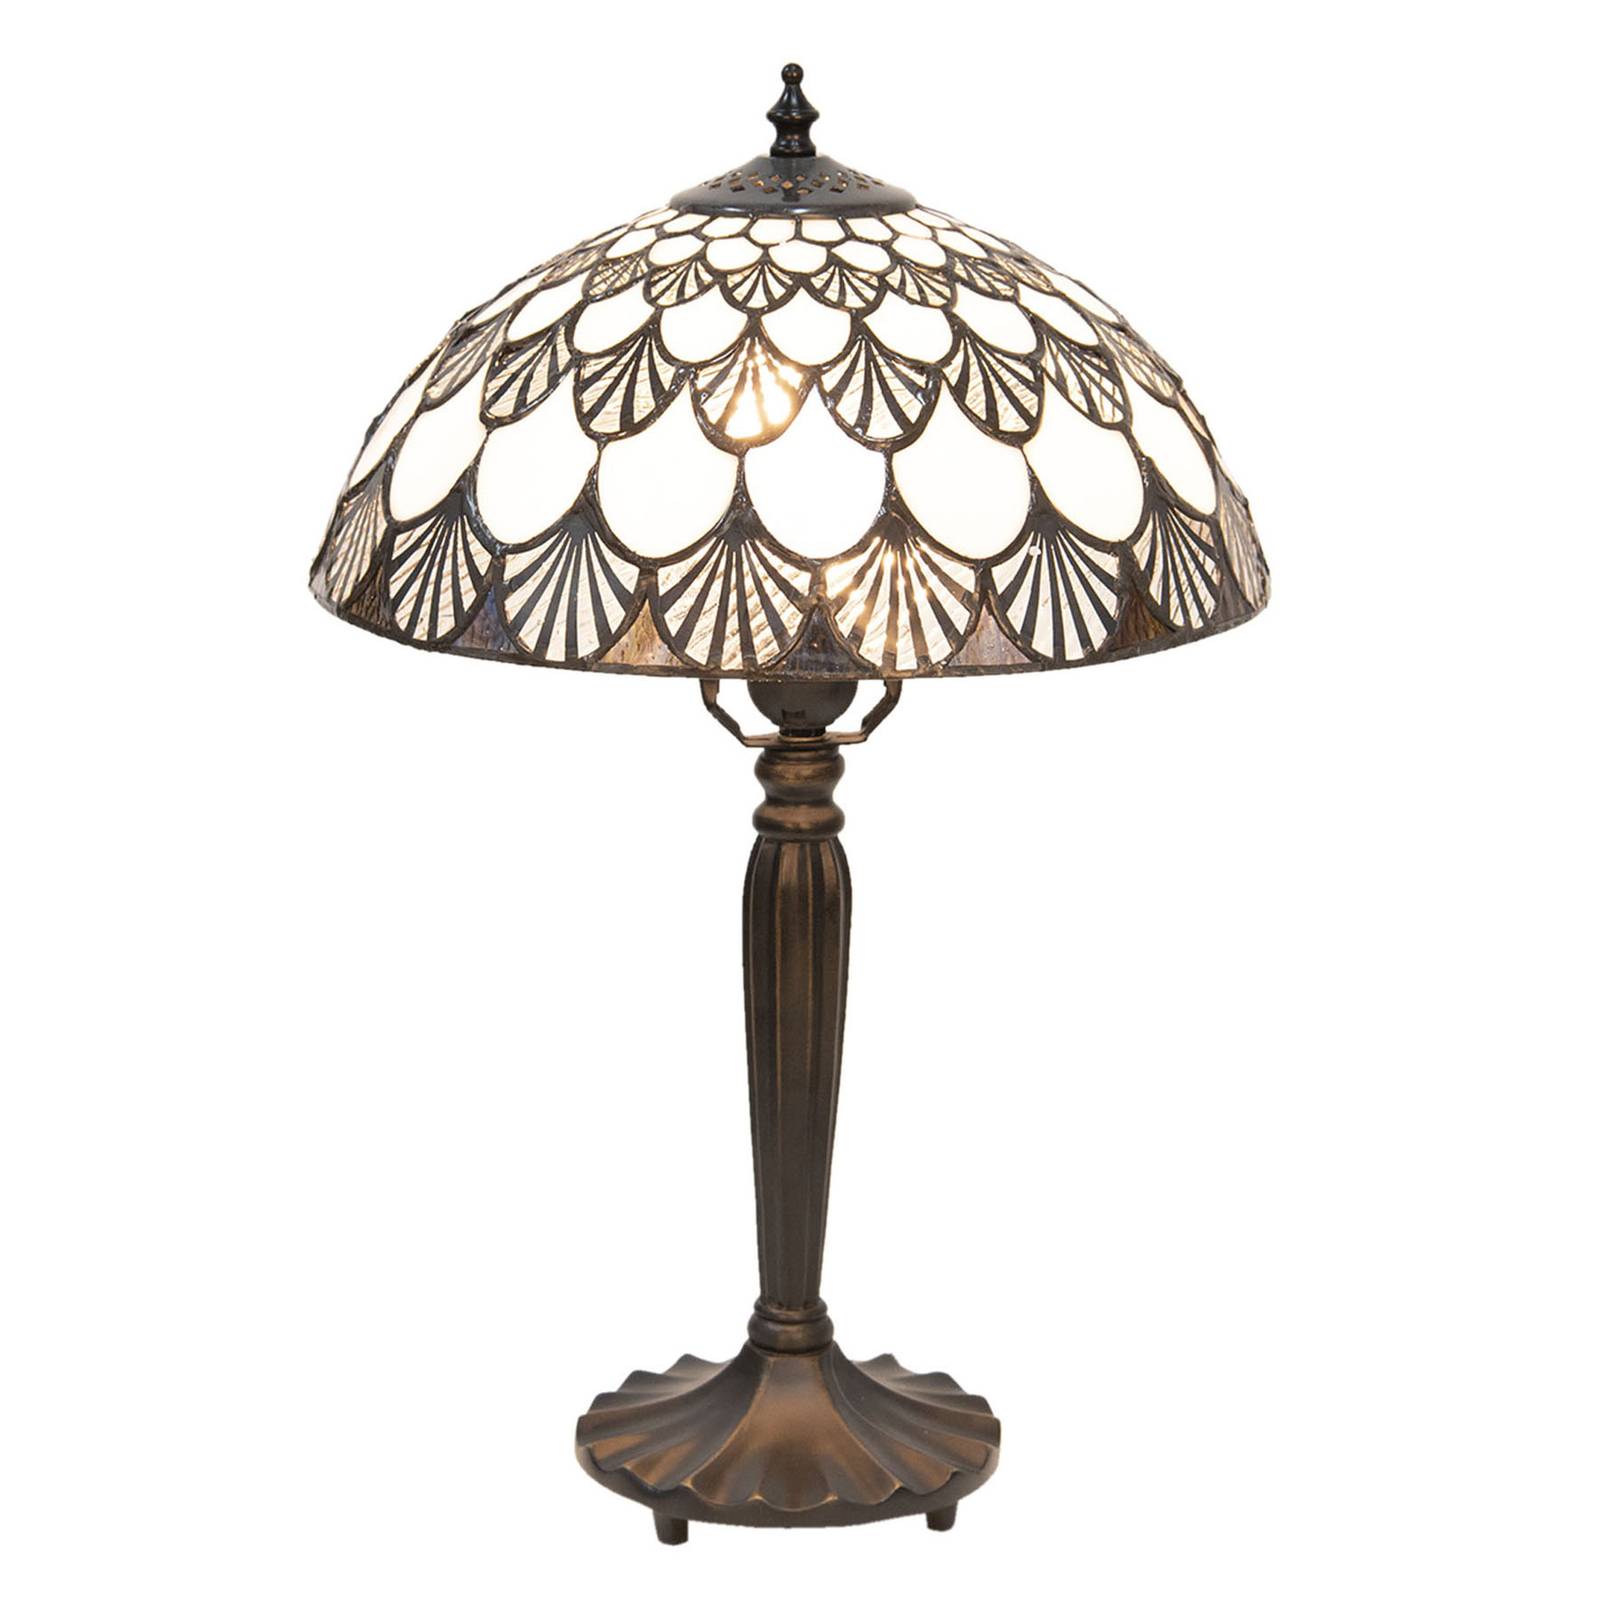 Tafellamp 5998 met schelppatroon, Tiffany-look